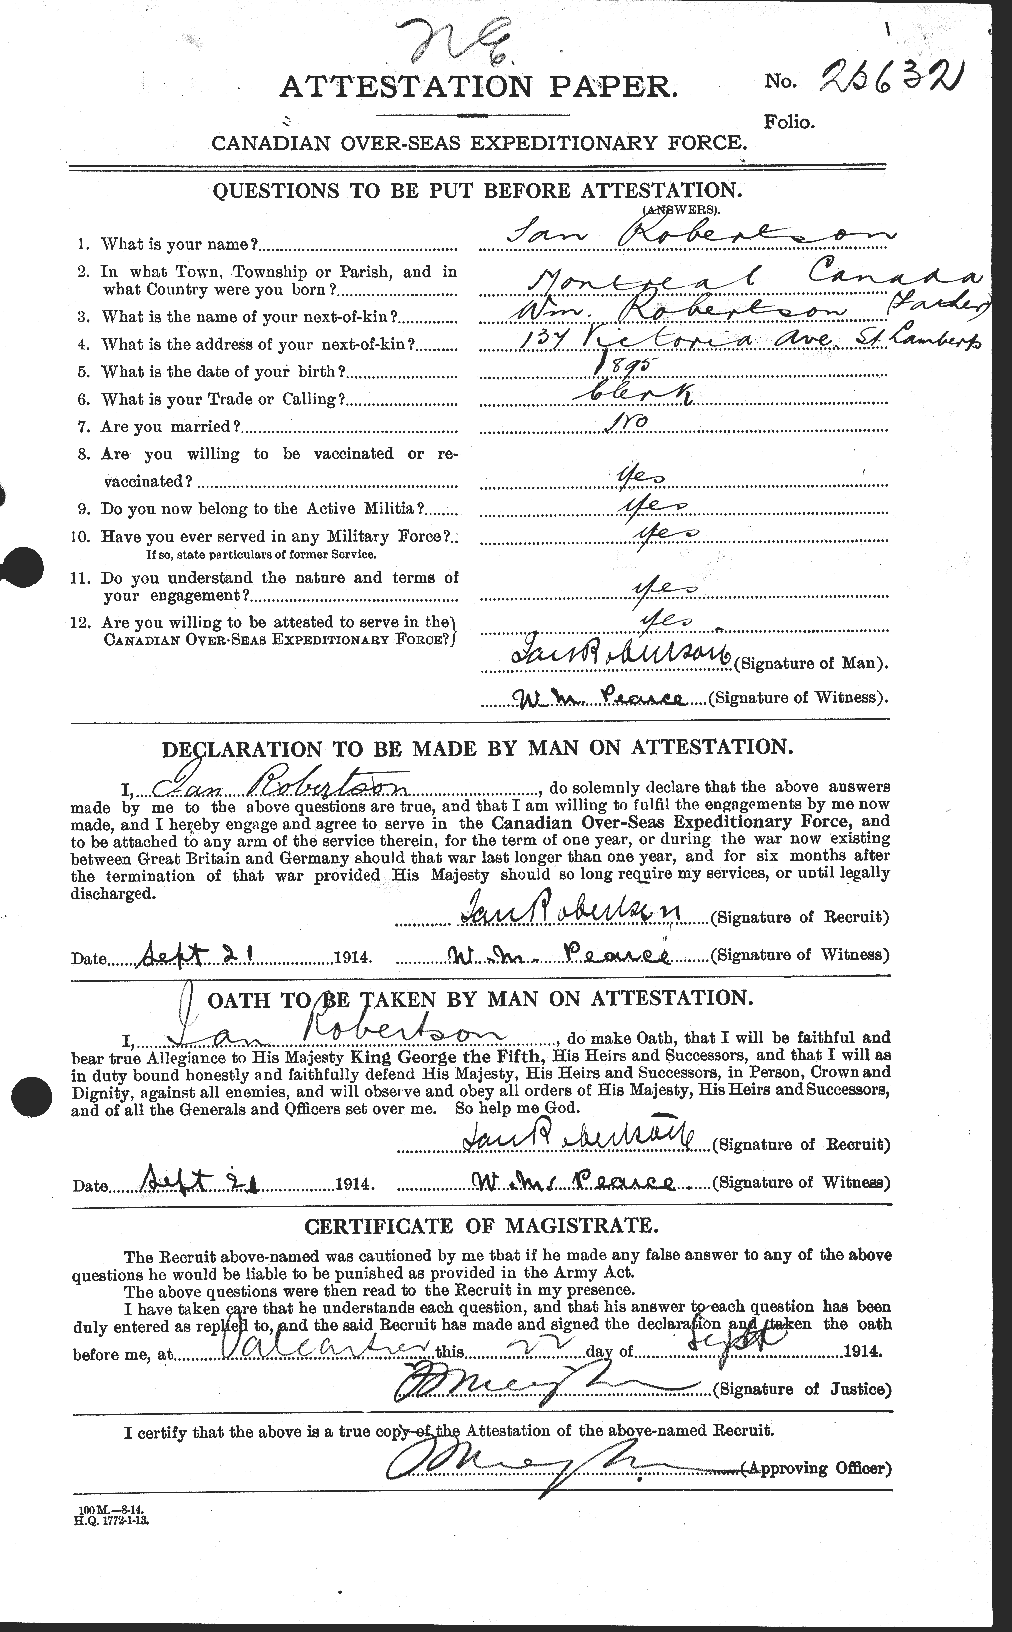 Dossiers du Personnel de la Première Guerre mondiale - CEC 609896a